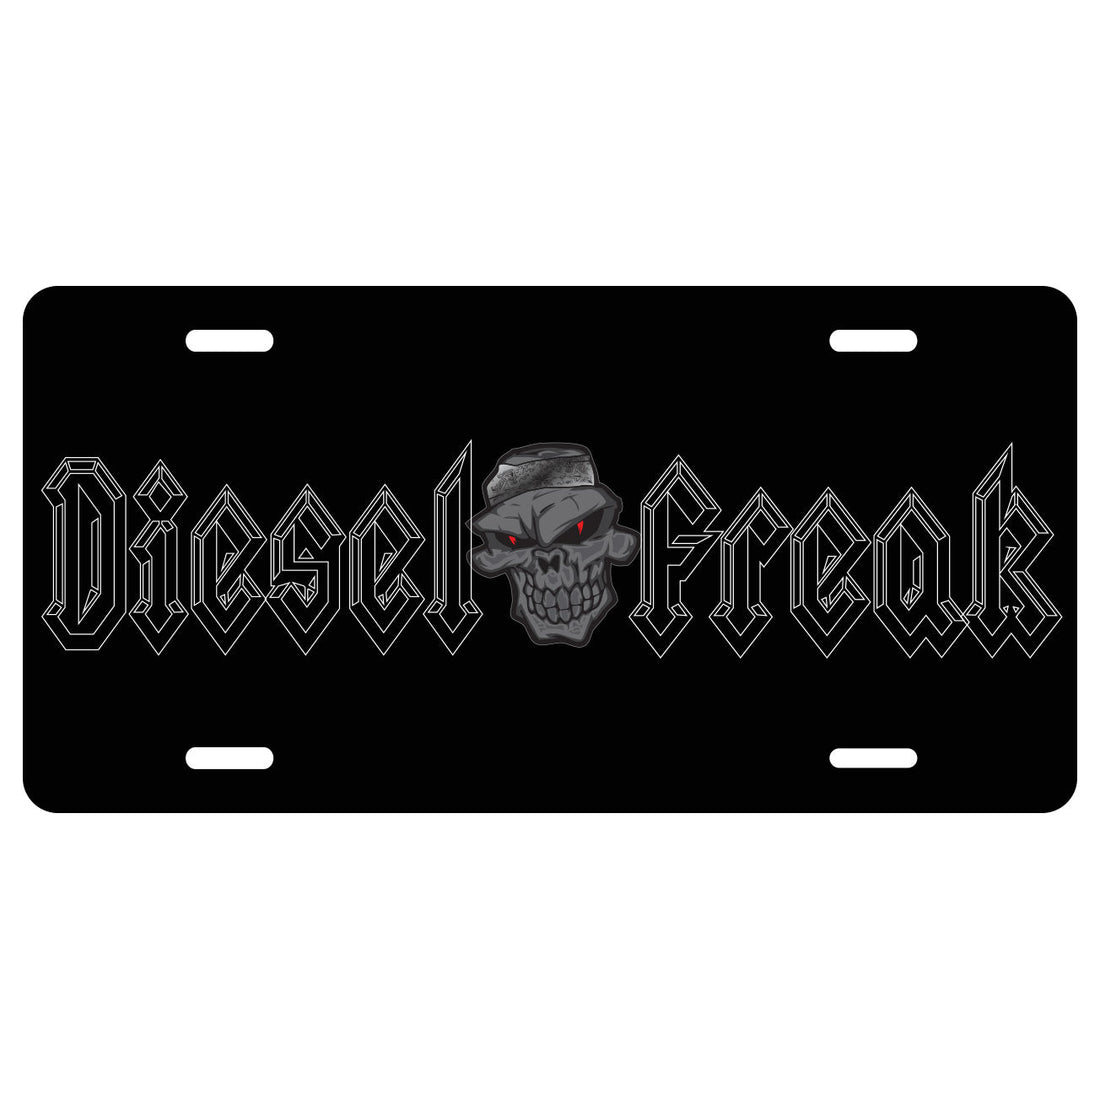 Diesel Freak Blackout License Plate - Diesel Freak